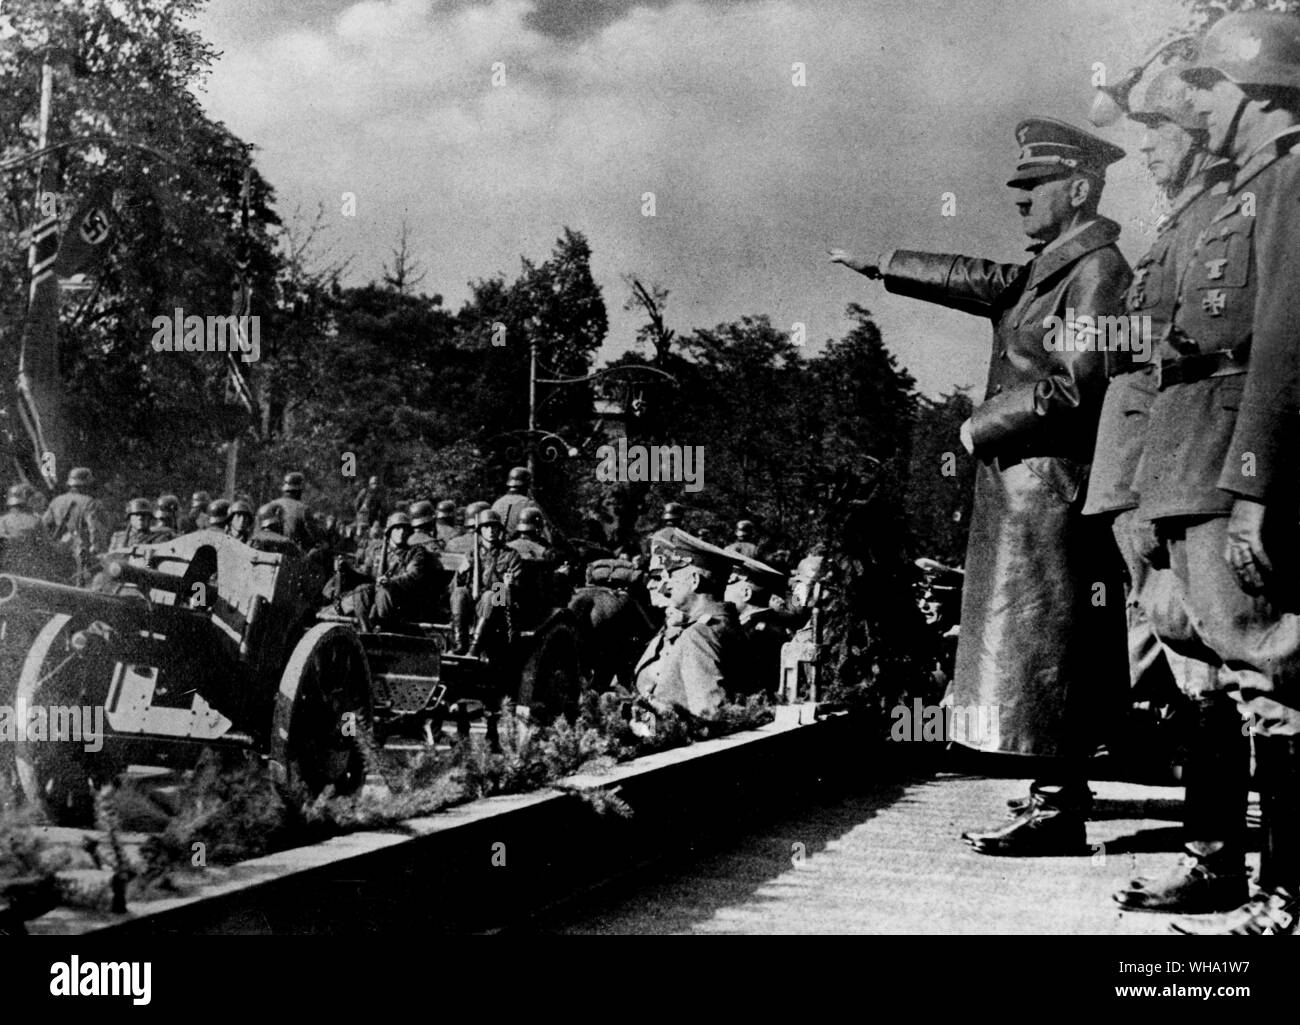 WW2 : les troupes allemandes victorieuses marchant passé Hitler à Varsovie, en Pologne au début de la guerre. 1939 Septembre. Banque D'Images